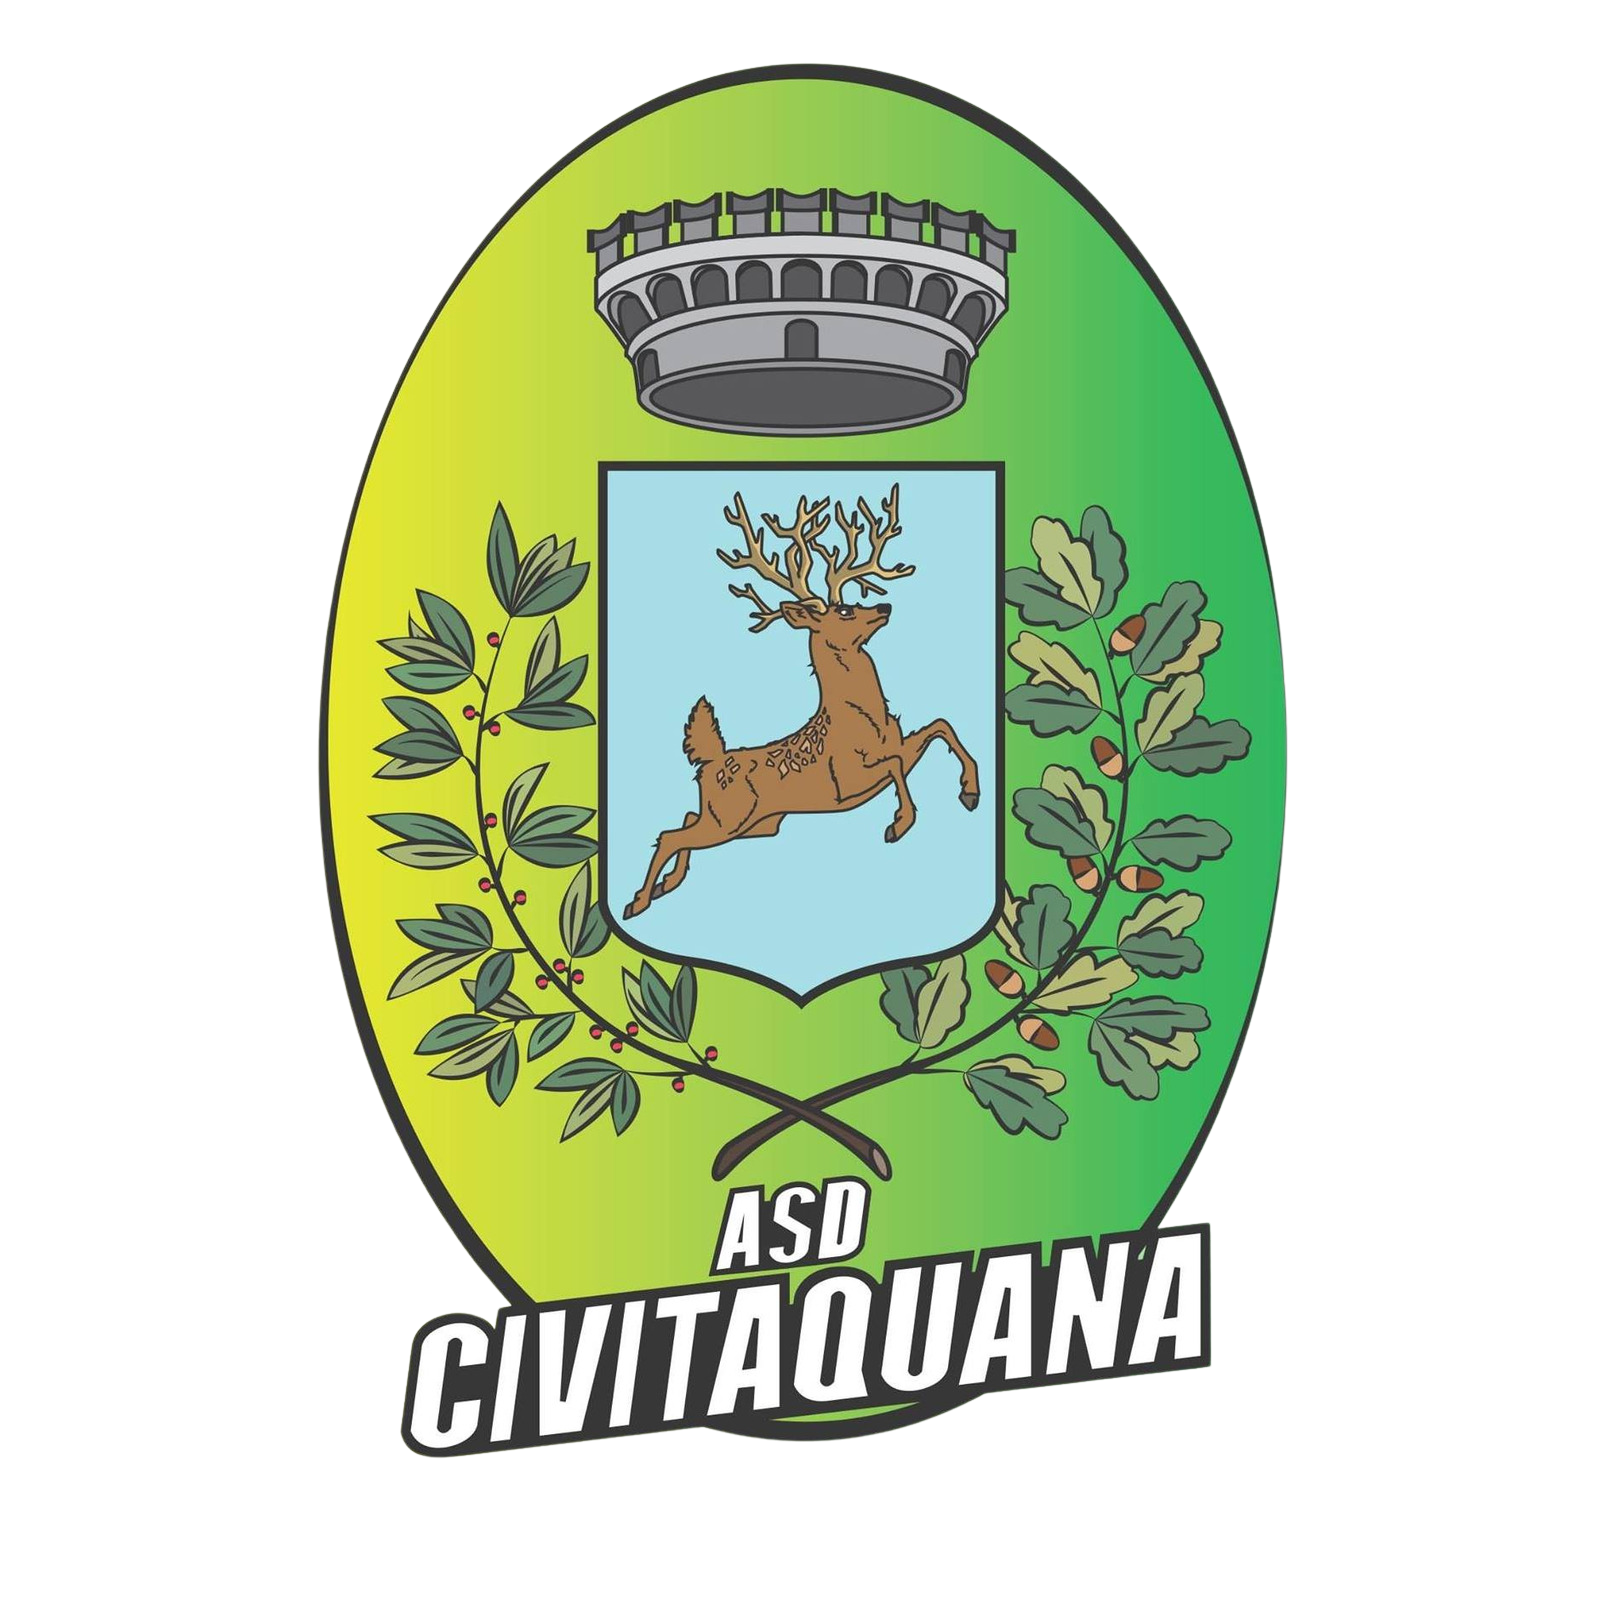 Civitaquana